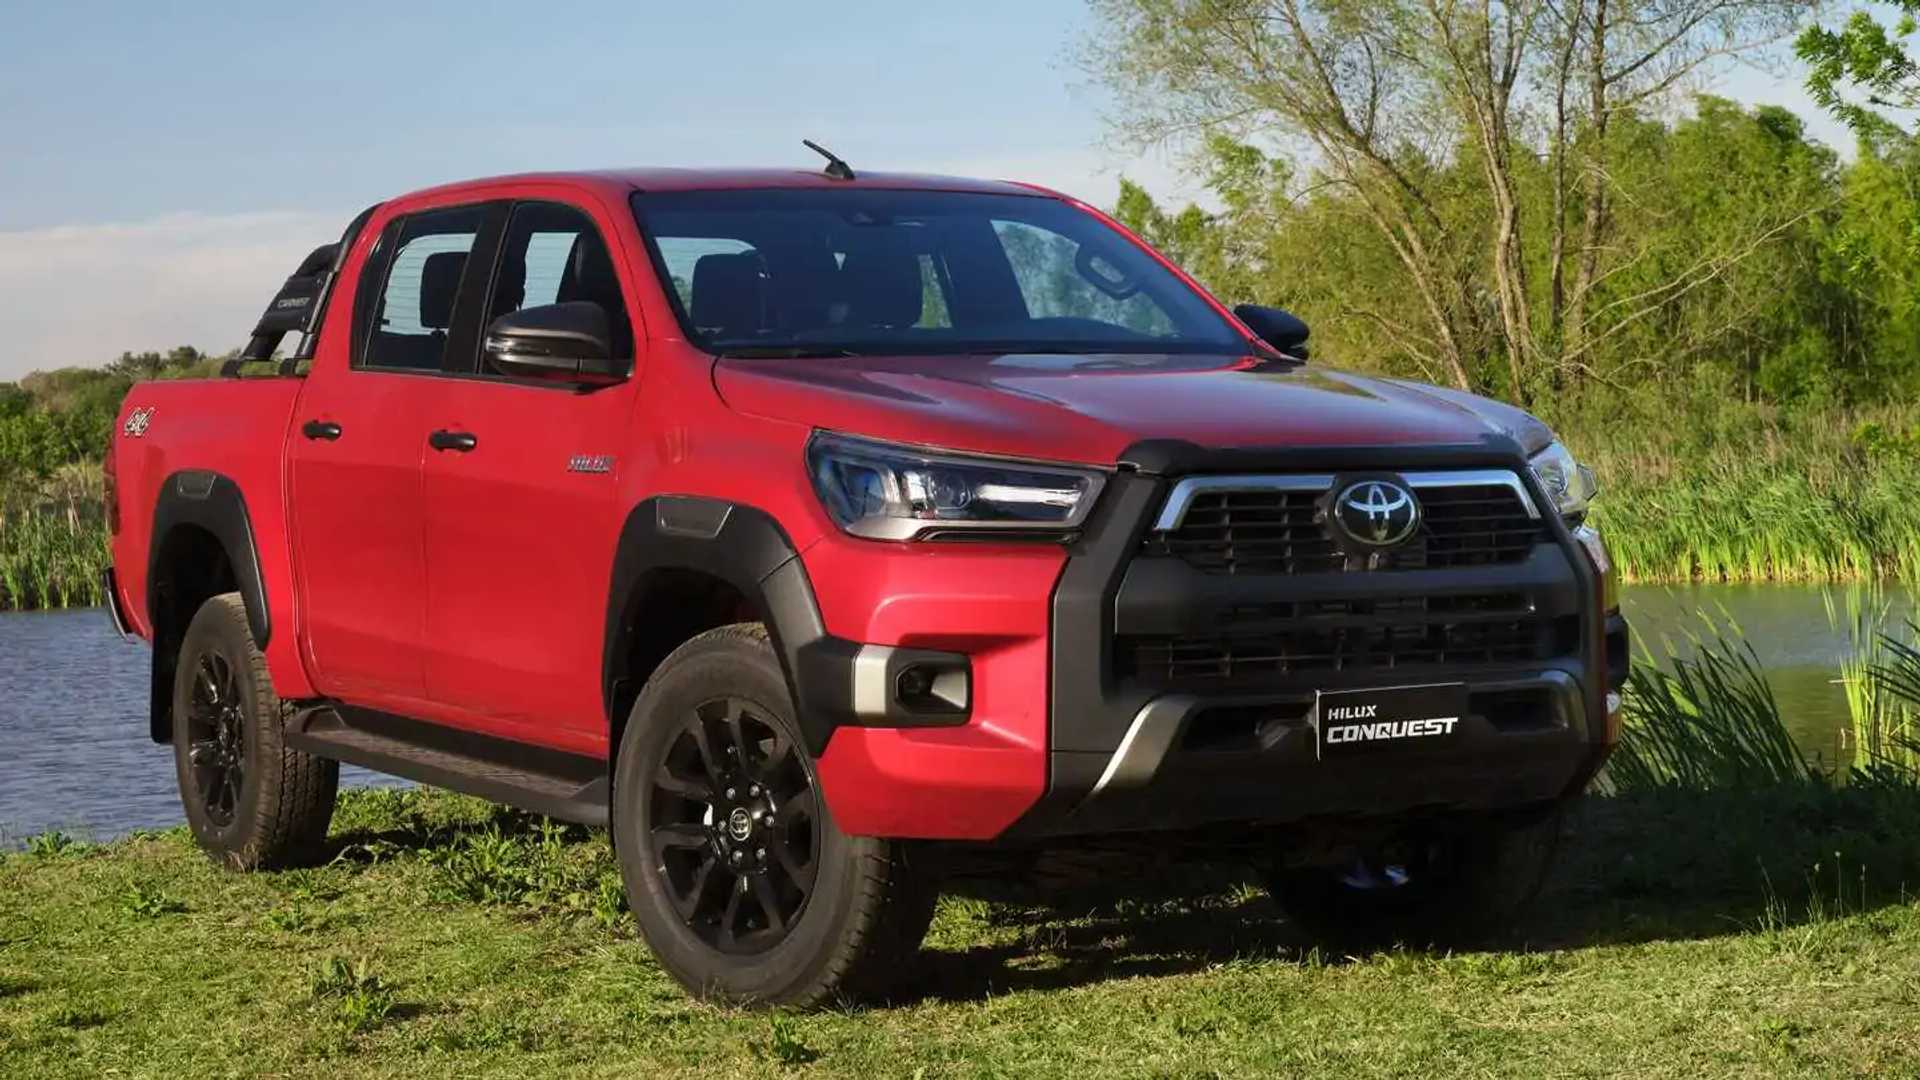 Toyota Hilux usado, vale a pena comprar em 2024? Vantagens e Desvantagens 2024